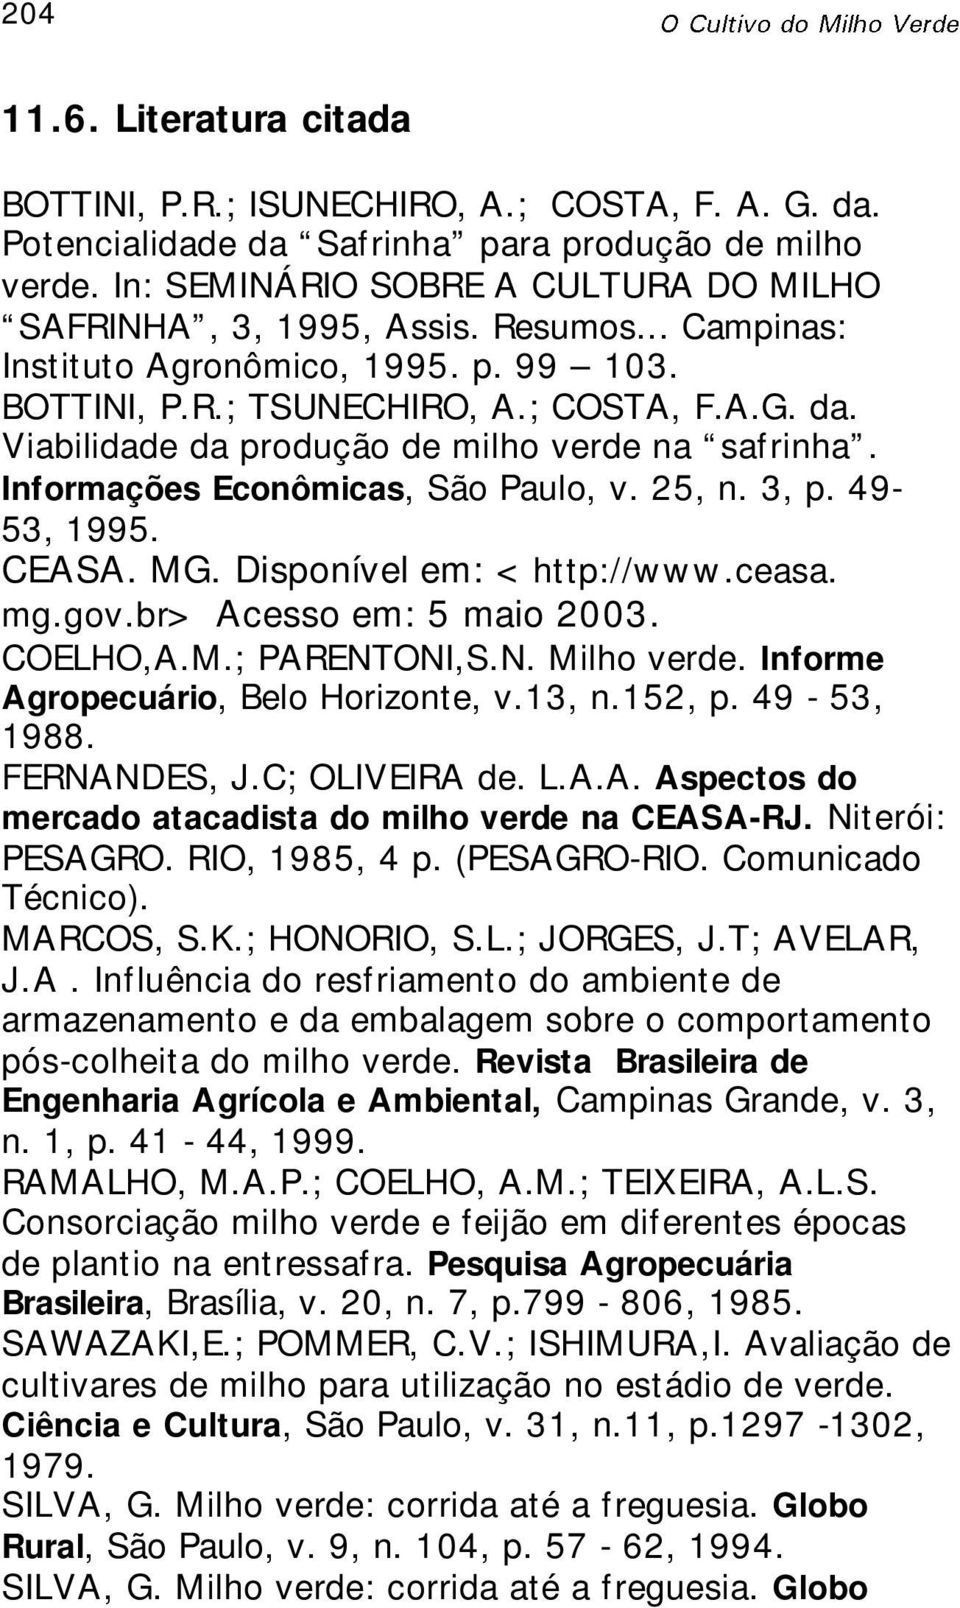 25, n. 3, p. 49-53, 1995. CEASA. MG. Disponível em: <http://www.ceasa. mg.gov.br> Acesso em: 5 maio 2003. COELHO,A.M.; PARENTONI,S.N. Milho verde. Informe Agropecuário, Belo Horizonte, v.13, n.152, p.